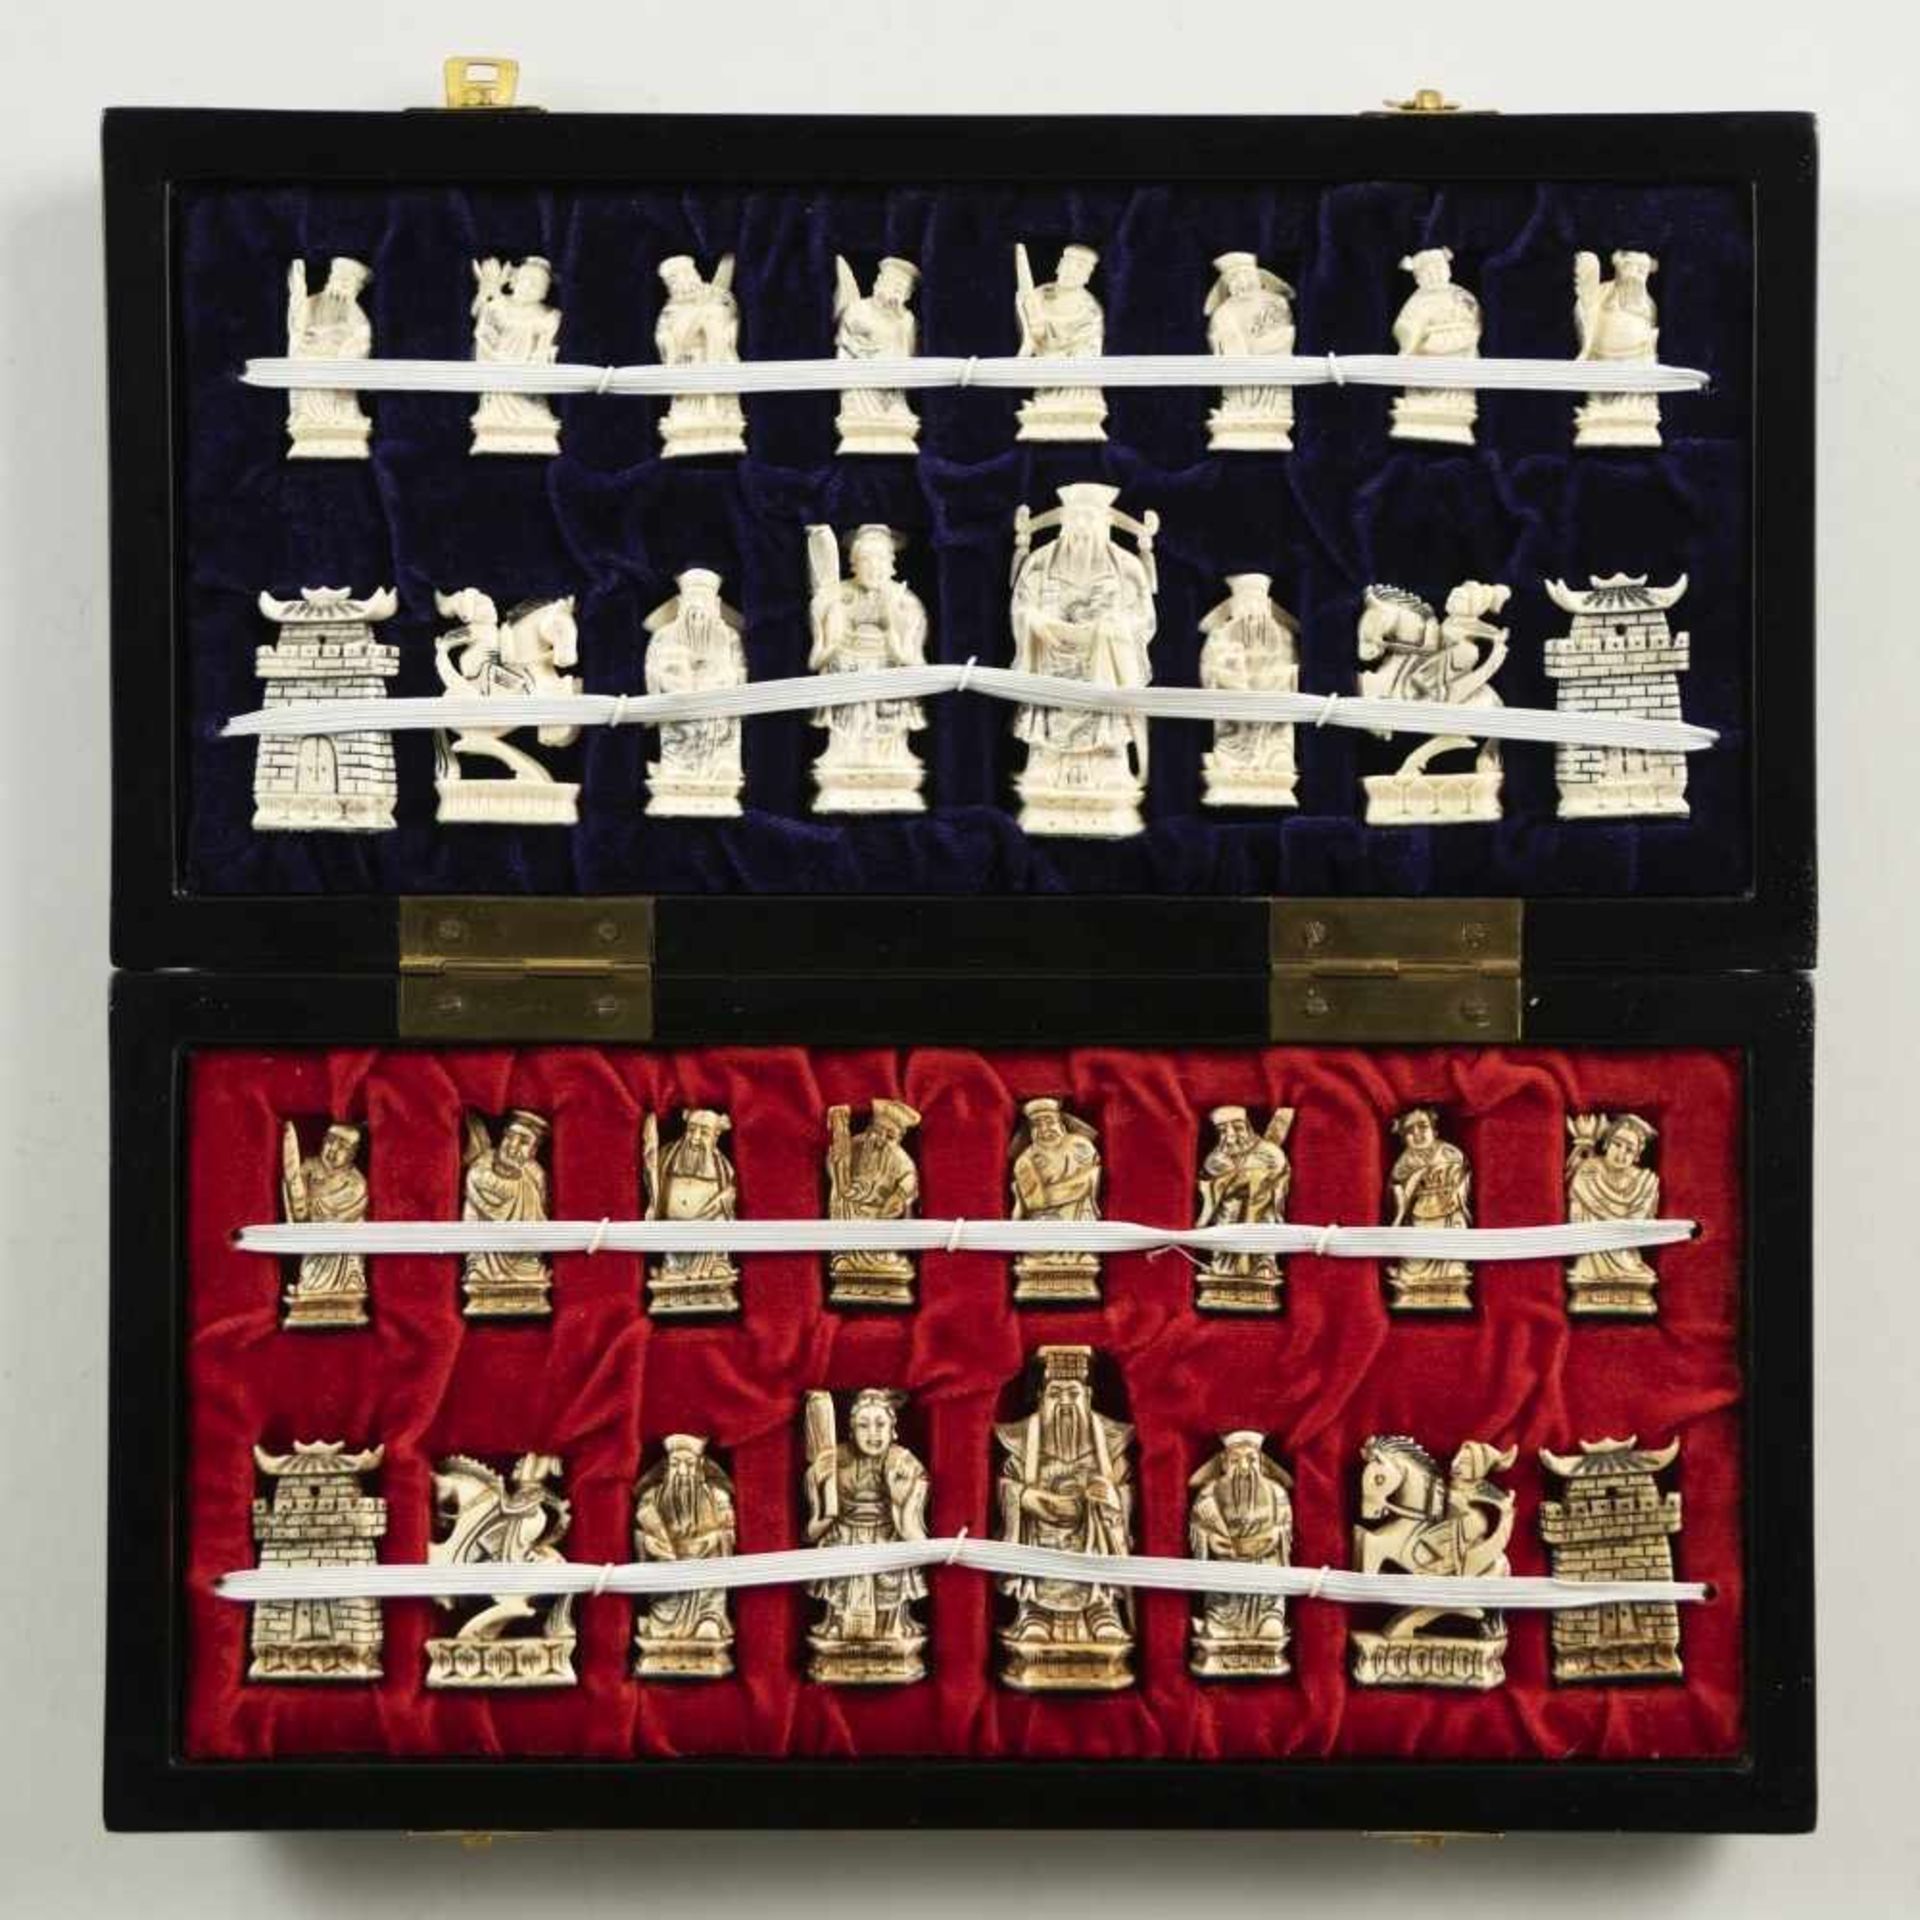 Schachspiel mit 32 Figuren aus ElfenbeinChina, 20. Jh.Kasten: 38 x 19 x 5 cm, Figuren von 4,5 bis